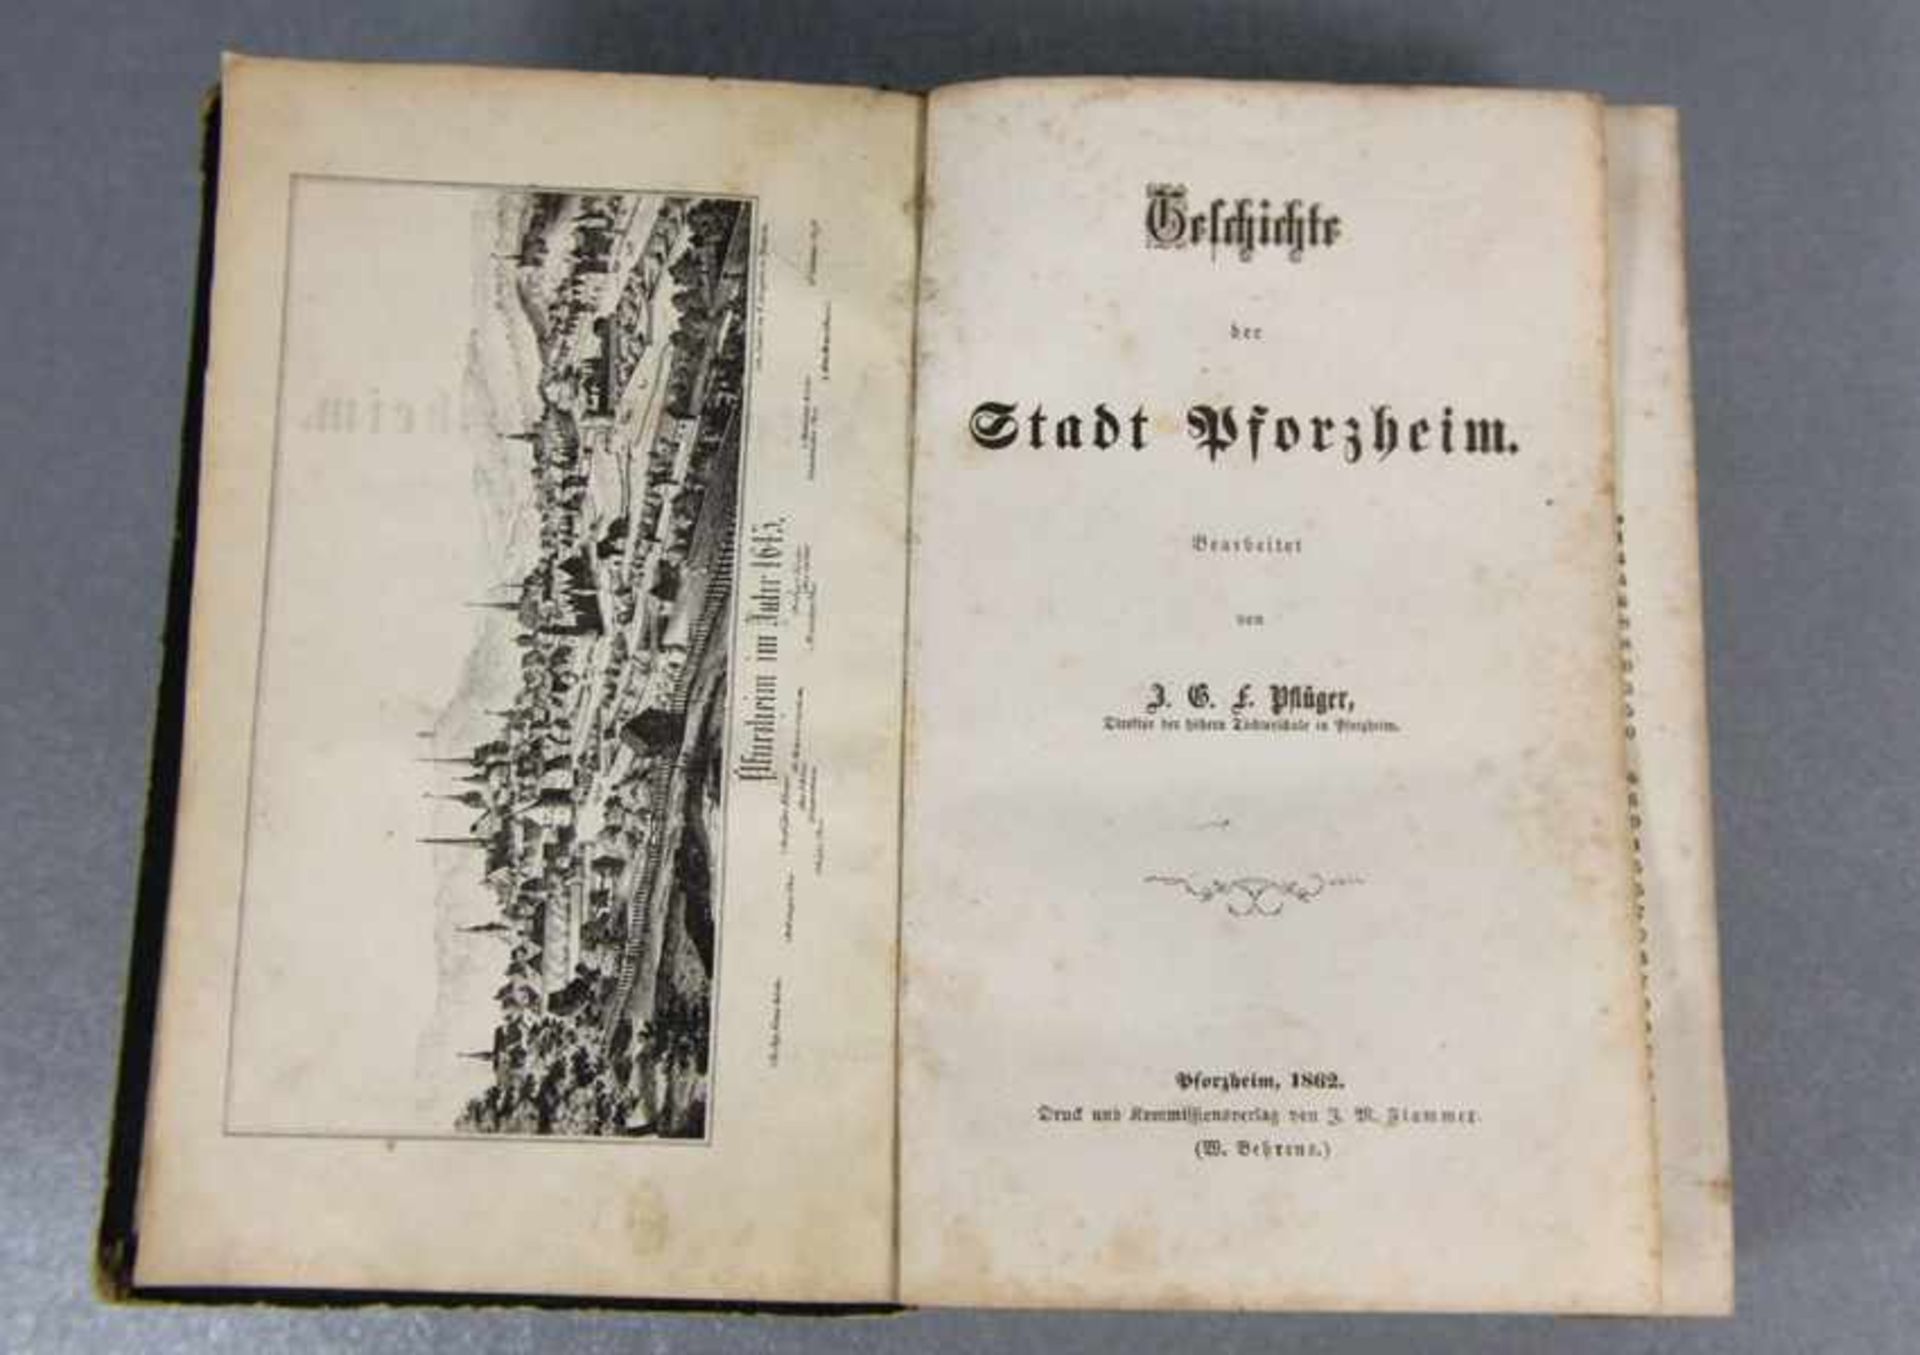 Geschichte der Stadt Pforzheim1862, Geschichte der Stadt Pforzheim, Bearbeitet von J. G. F.